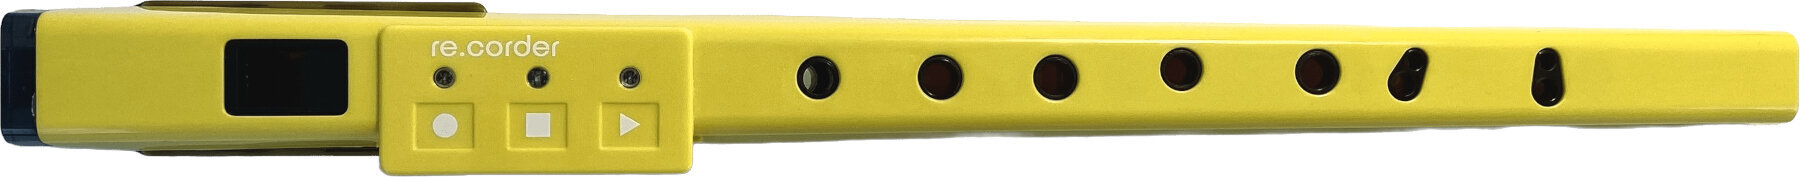 Hybrid-Blasinstrument Artinoise Re.corder Yellow Hybrid-Blasinstrument